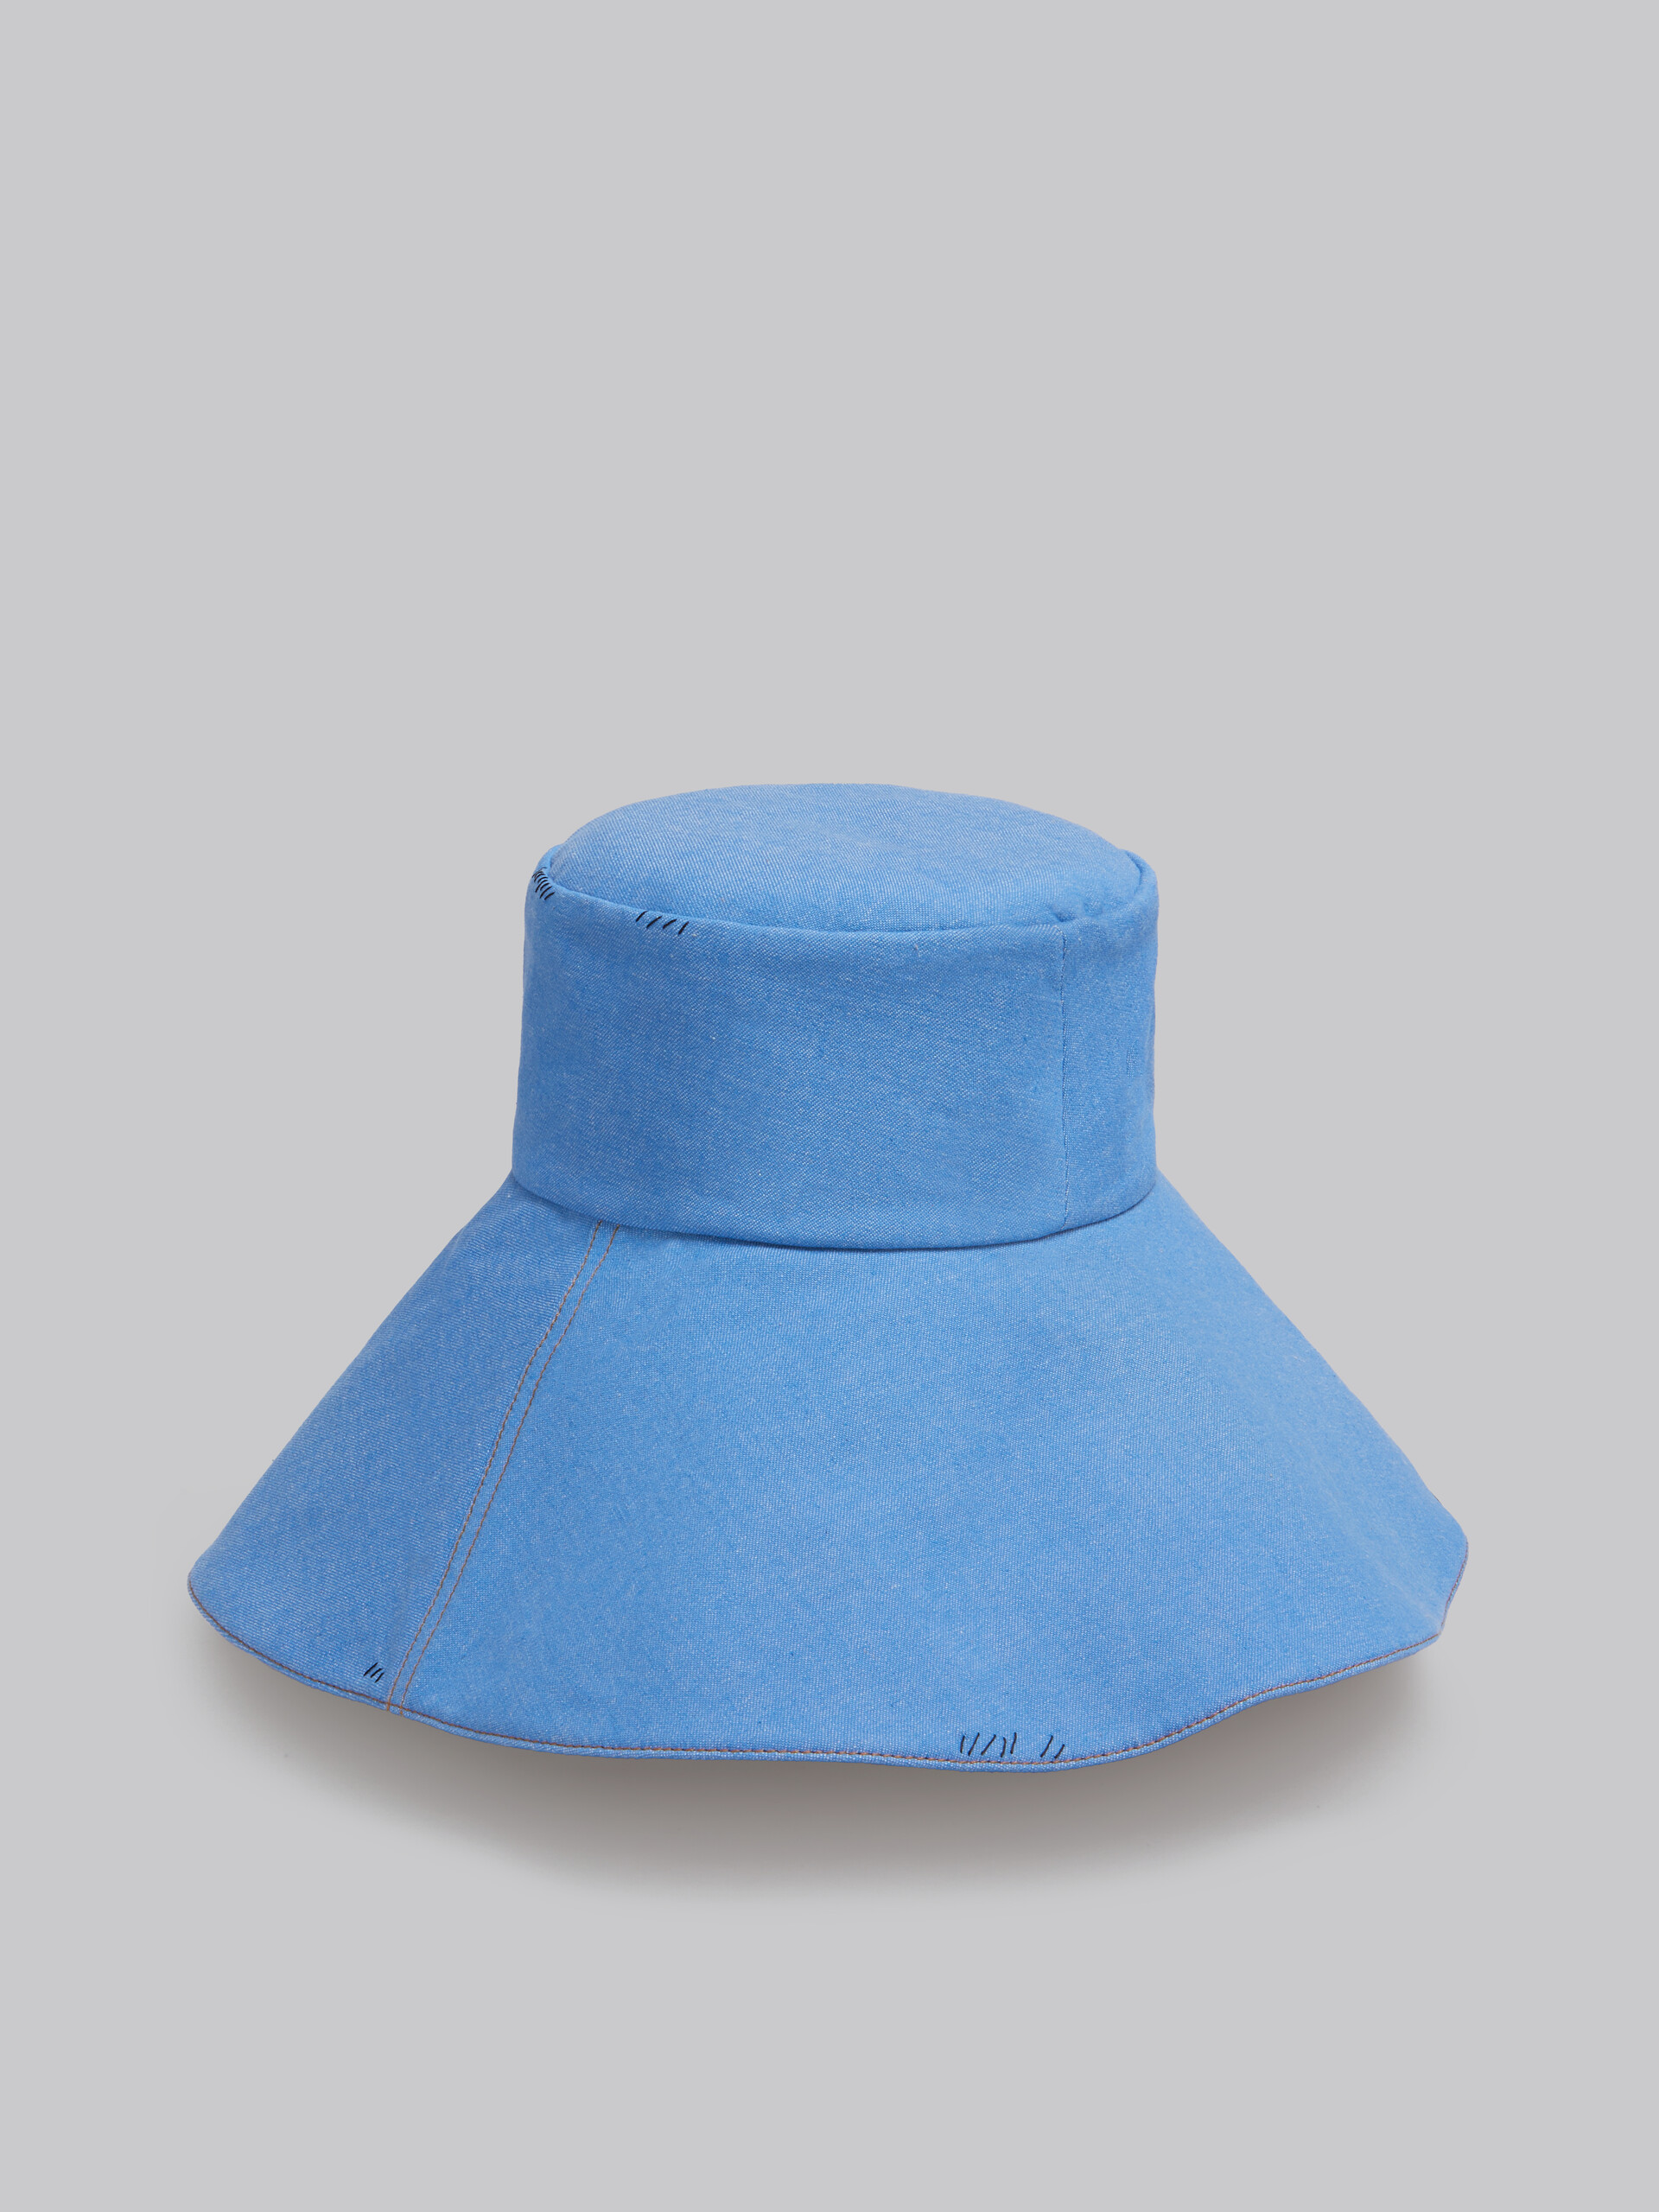 Blauer Fischerhut aus Denim mit Marni-Flicken - Hüte - Image 3